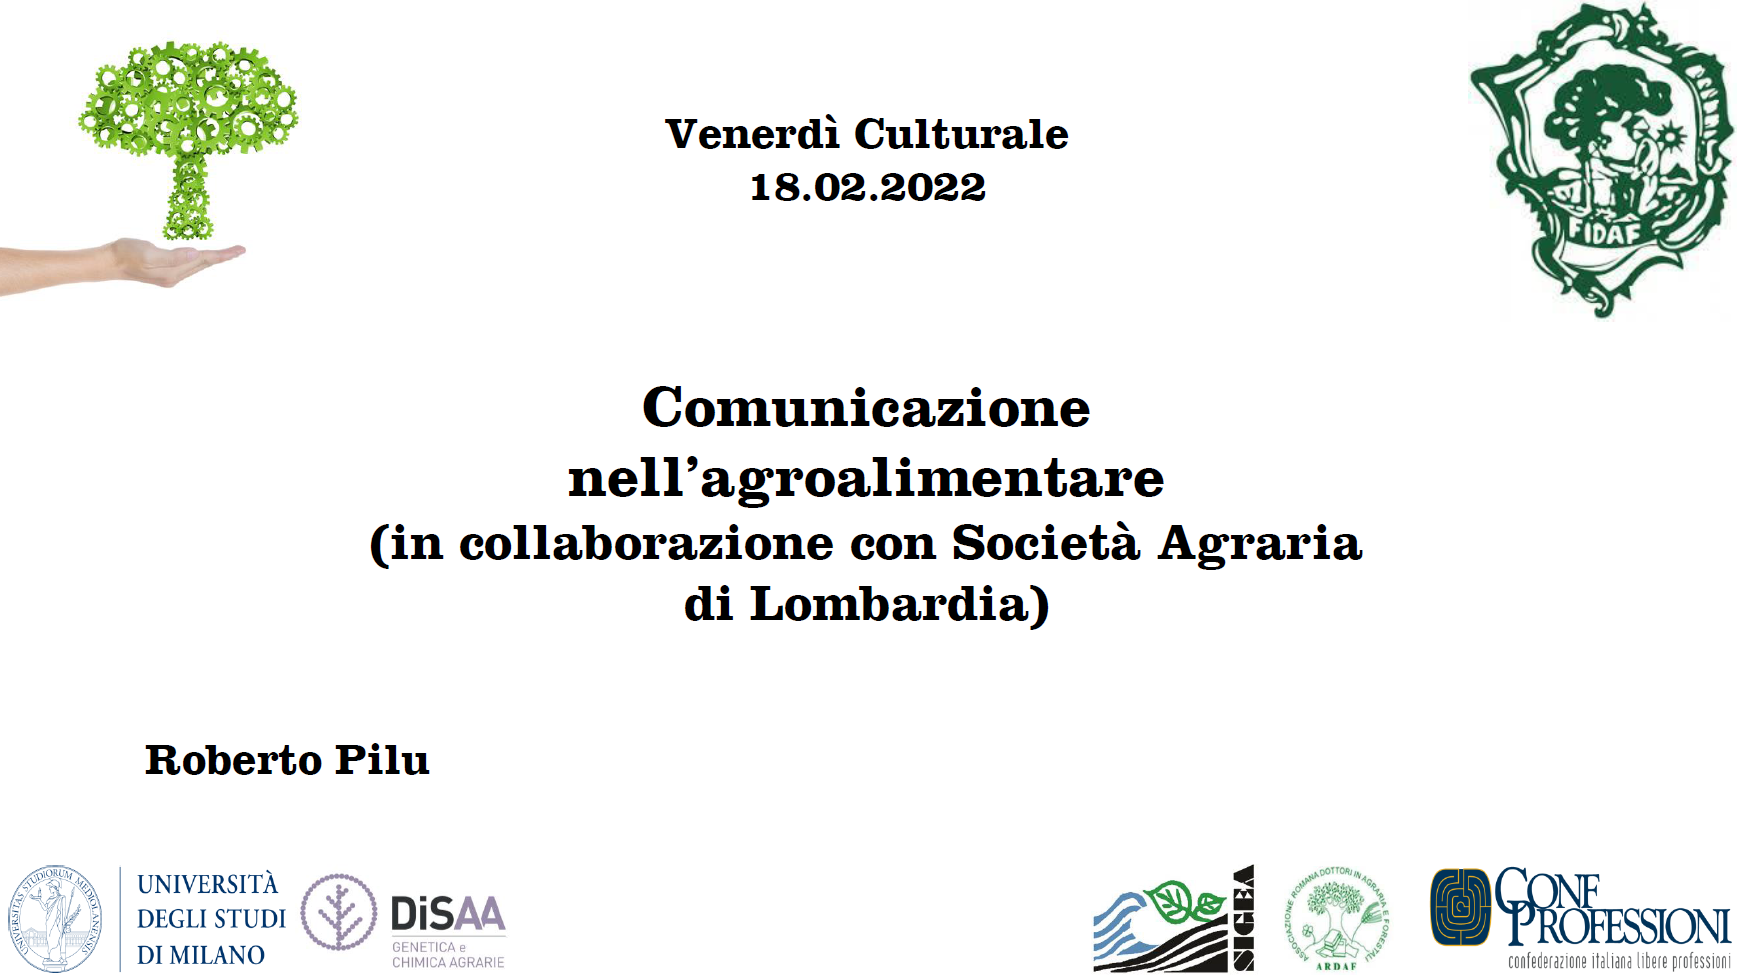 Venerdì Culturale del 18.02.2022 “Comunicazione nell’agroalimentare” (In collaborazione con la Società Agraria di Lombardia) – Diapositive